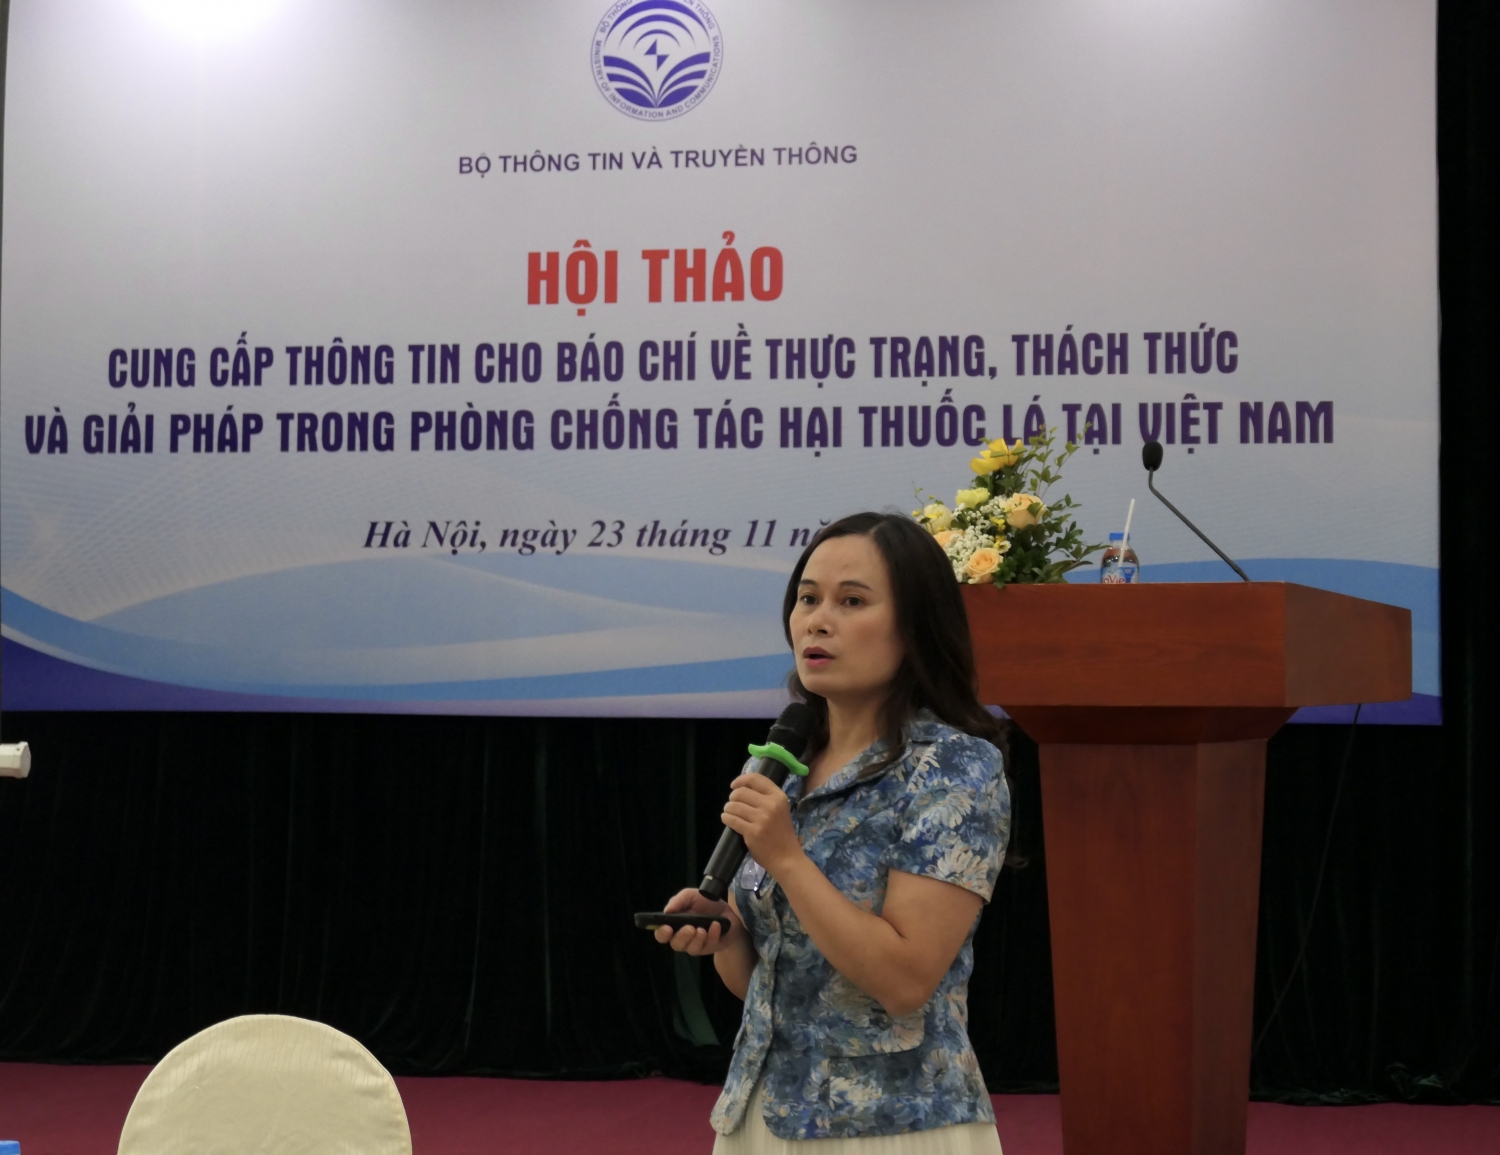 Thực trạng, thách thức và giải pháp trong phòng chống tác hại thuốc lá tại Việt Nam 2022